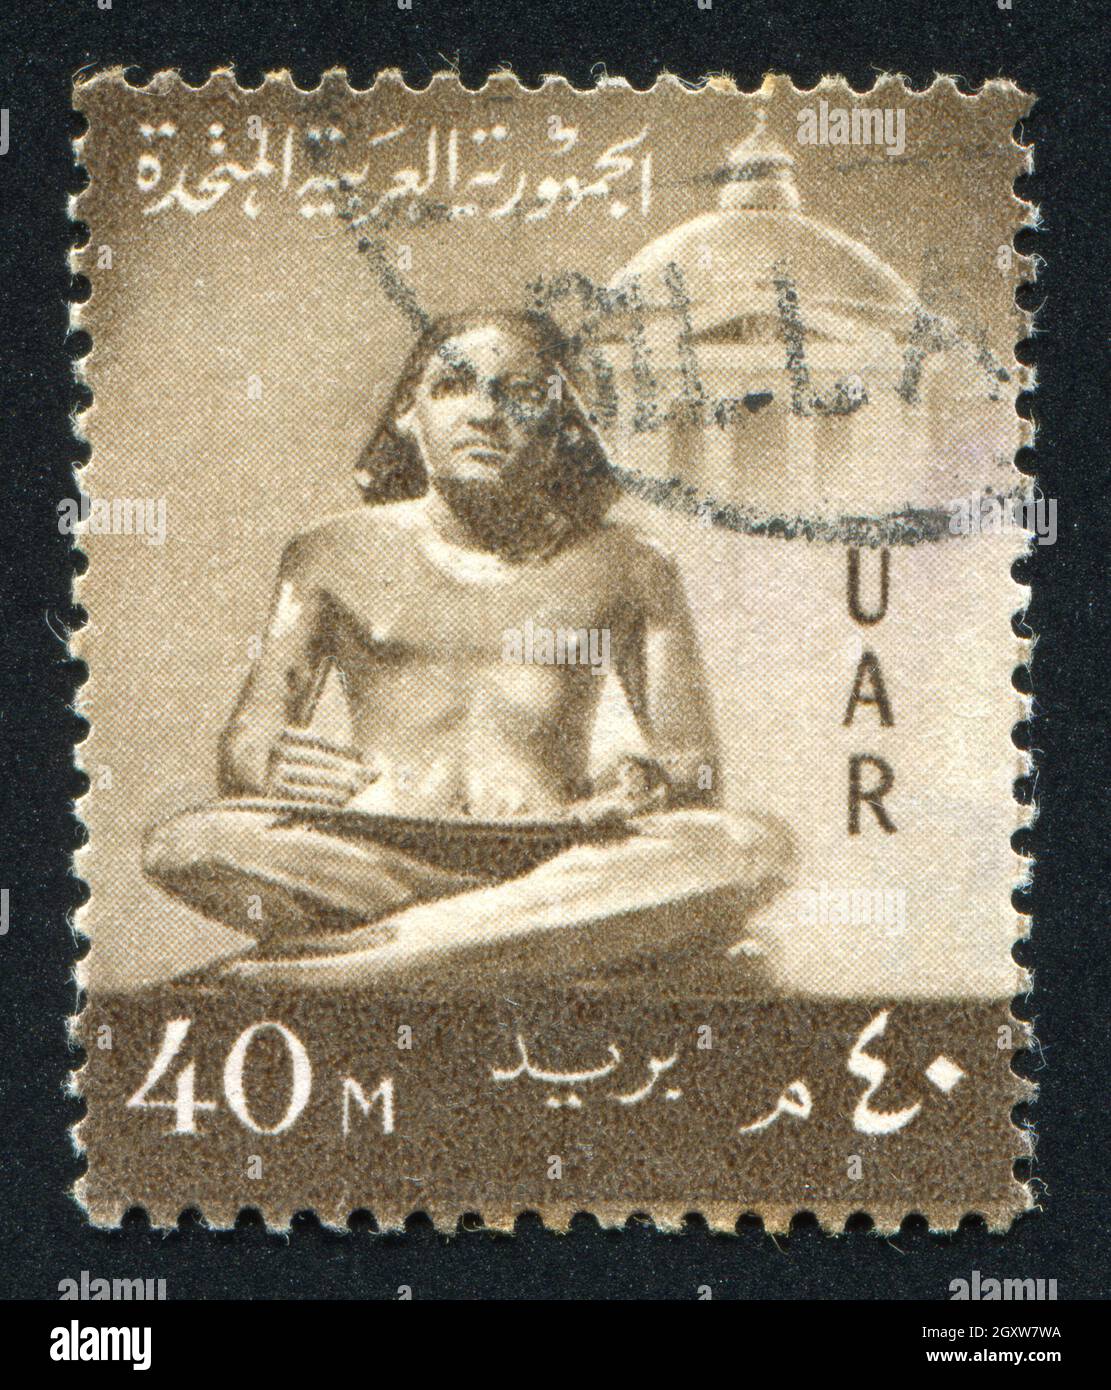 EGITTO - CIRCA 1959: Timbro stampato dall'Egitto, mostra la statua di Scribe, circa 1959 Foto Stock